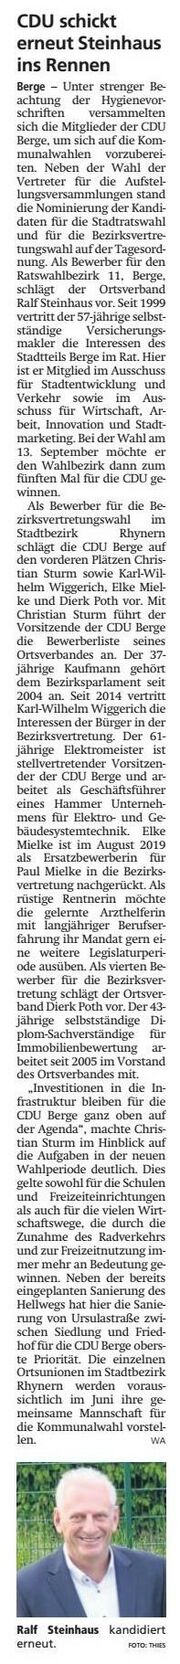 WA 20200515 CDU schickt erneut Steinhaus ins Rennen.jpg